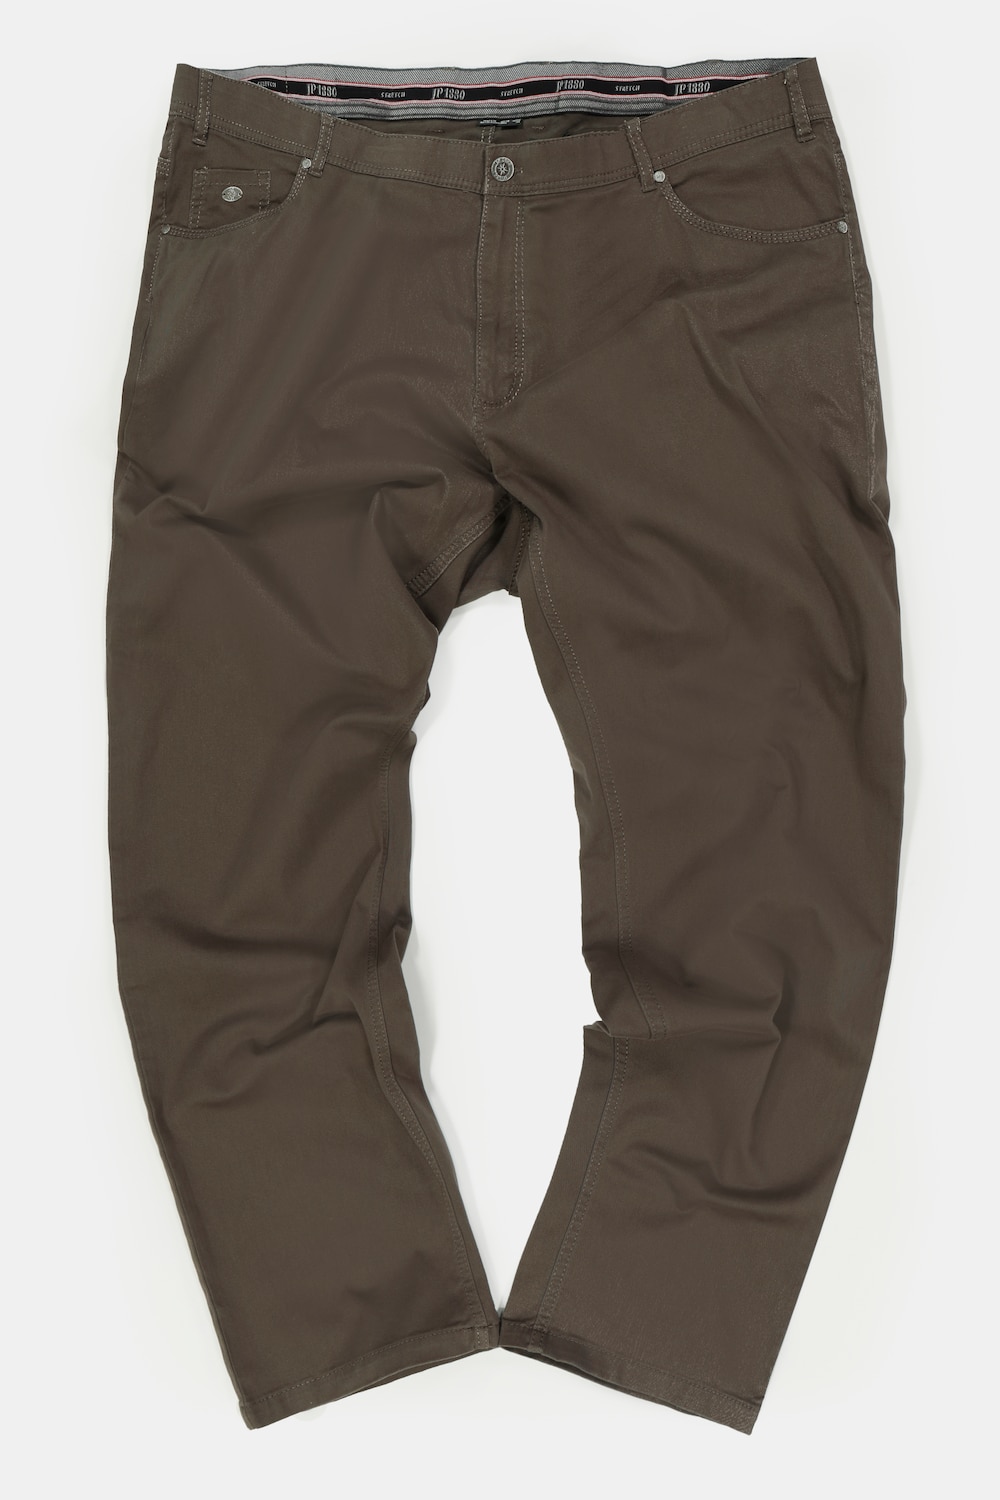 5 pocket broek, grote maten, , heren, groen, maat 58, katoen, jp1880